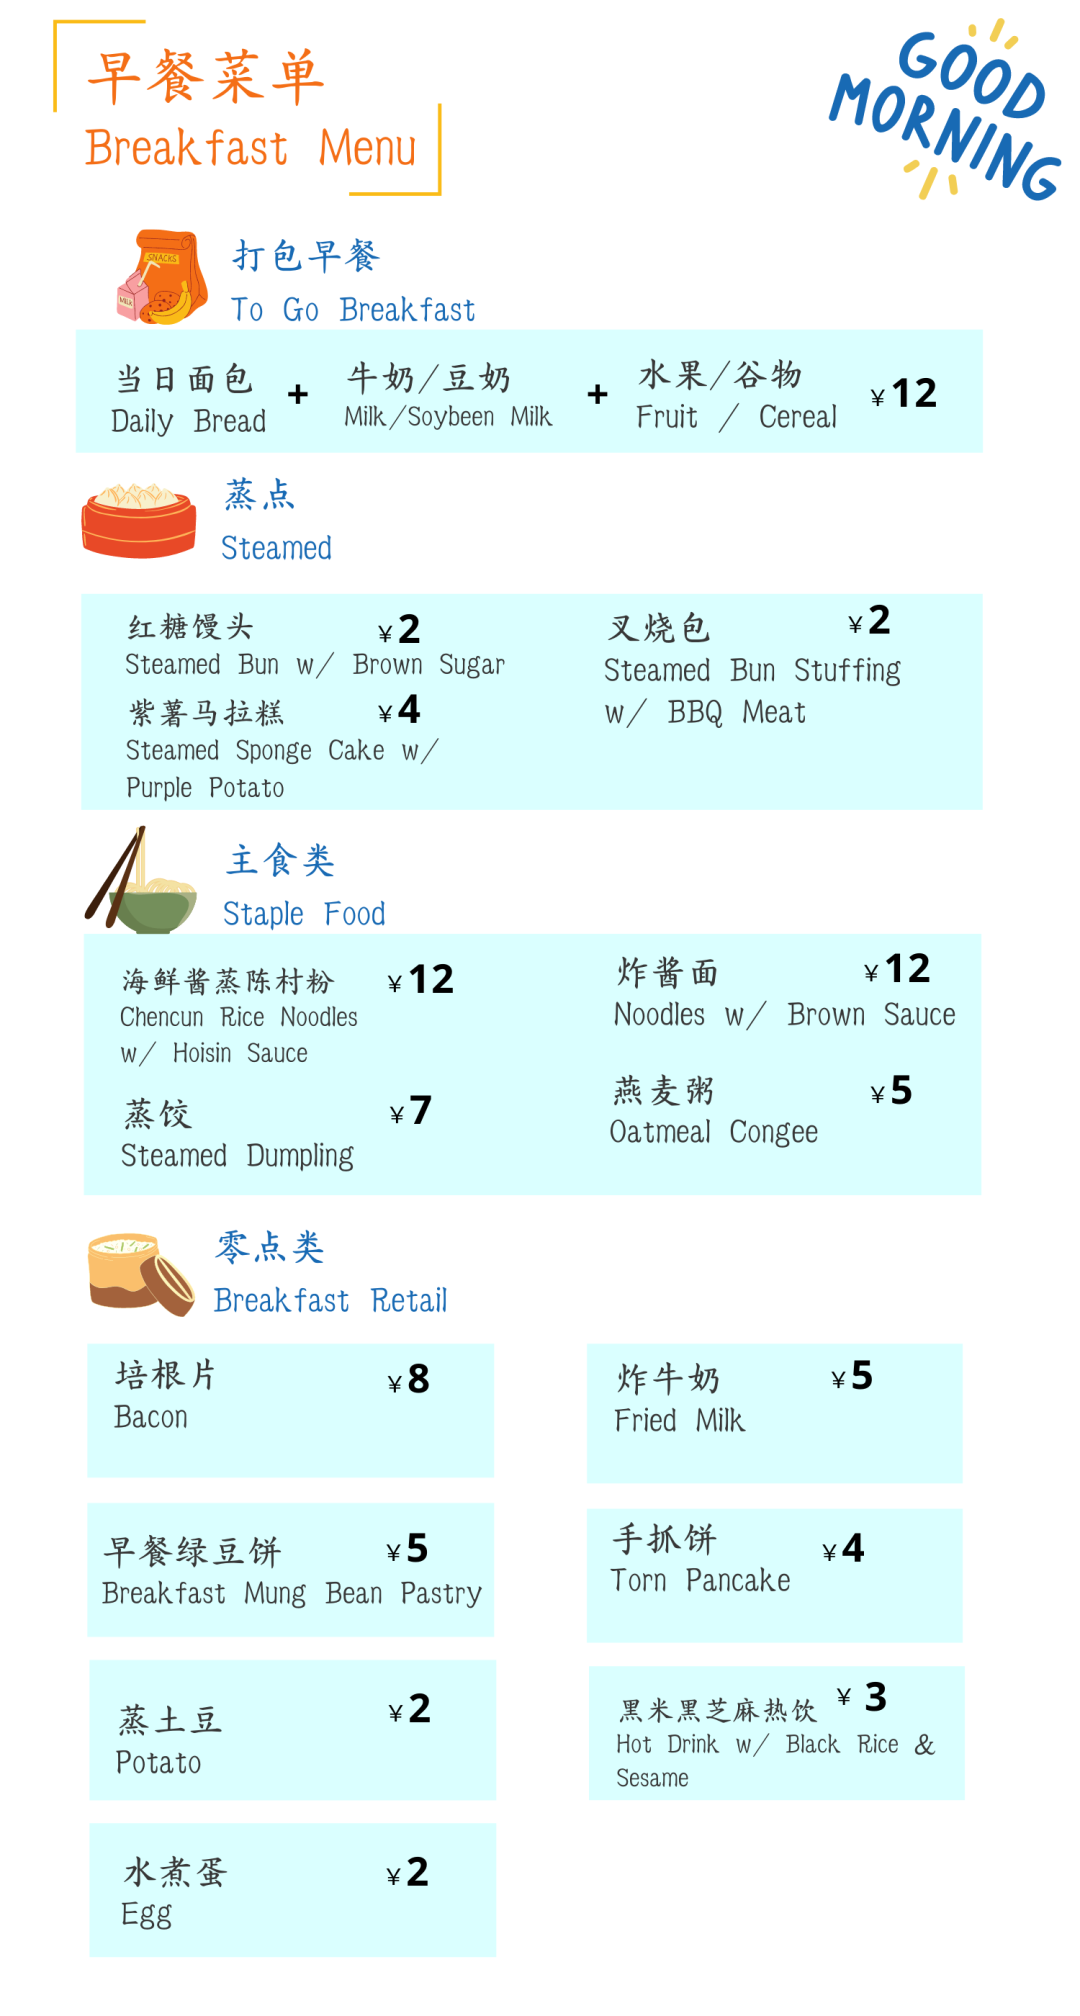 深国交冬天的食堂是什么样子的？美食图片马上端上。。。  深圳国际交流学院 学在国交 深国交 第21张